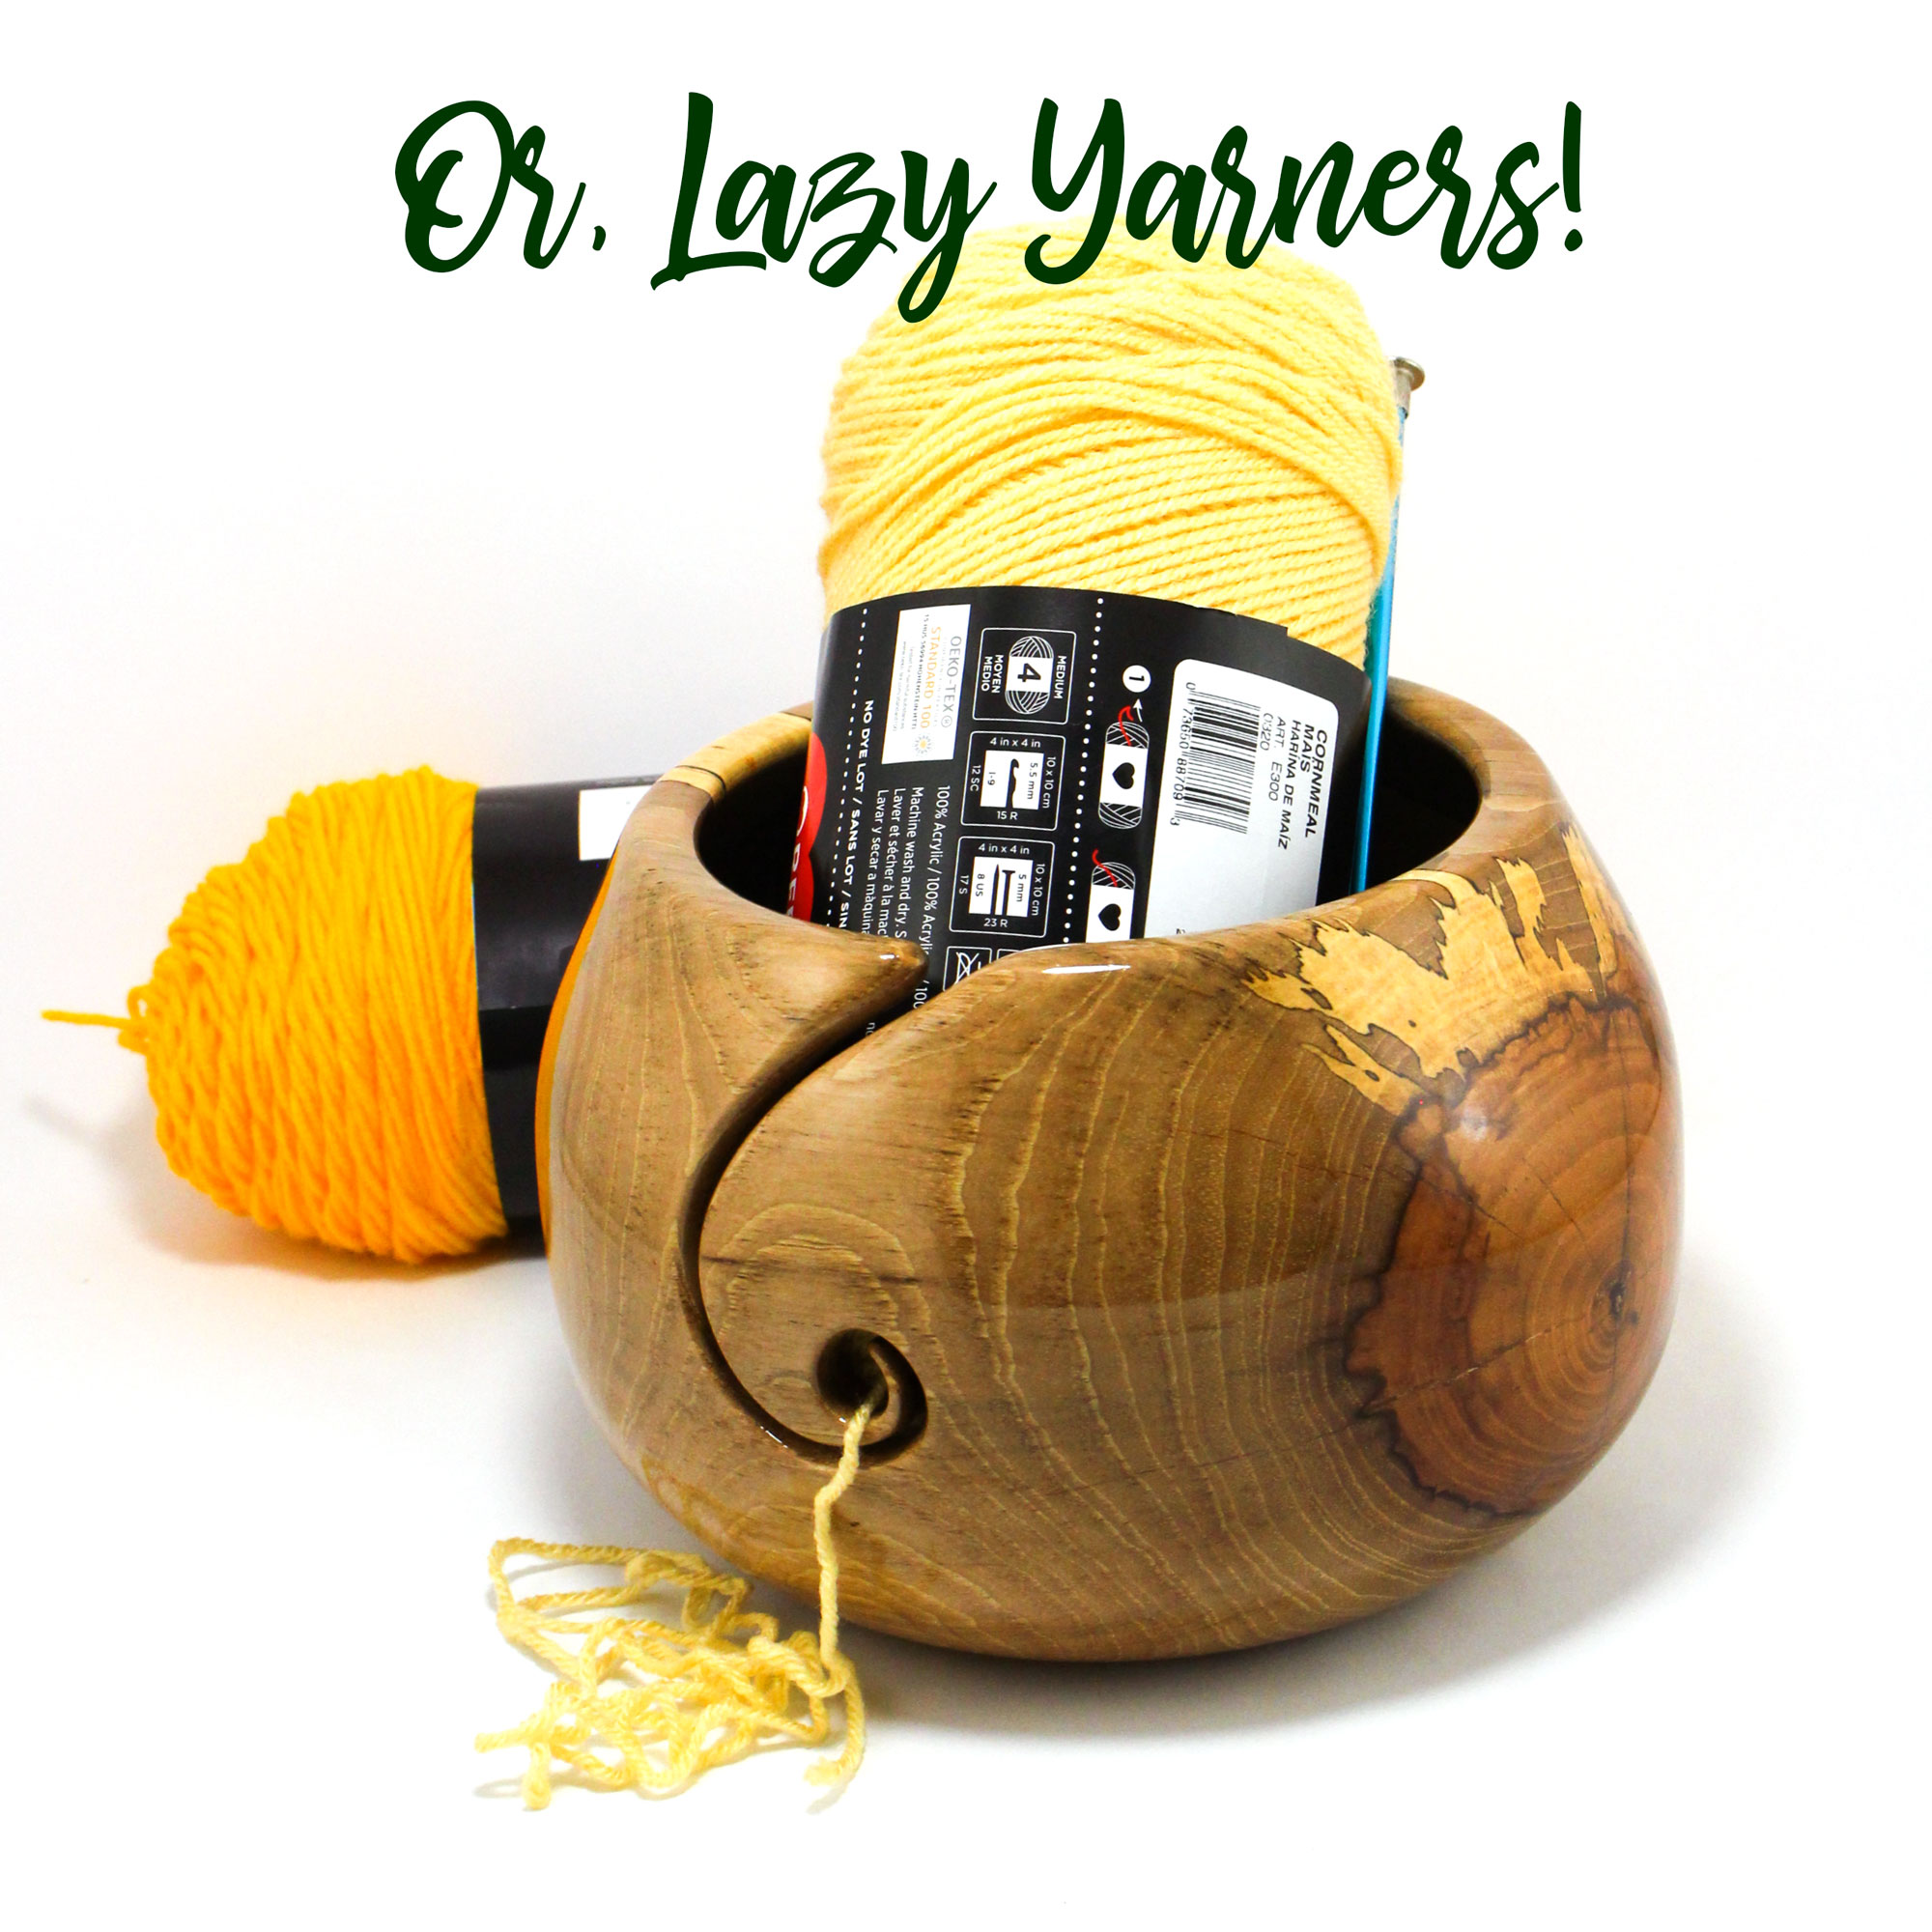 XXL Yarn Bowl, Pecan, Artisan Crafted for Knitting, Crochet, Yarning